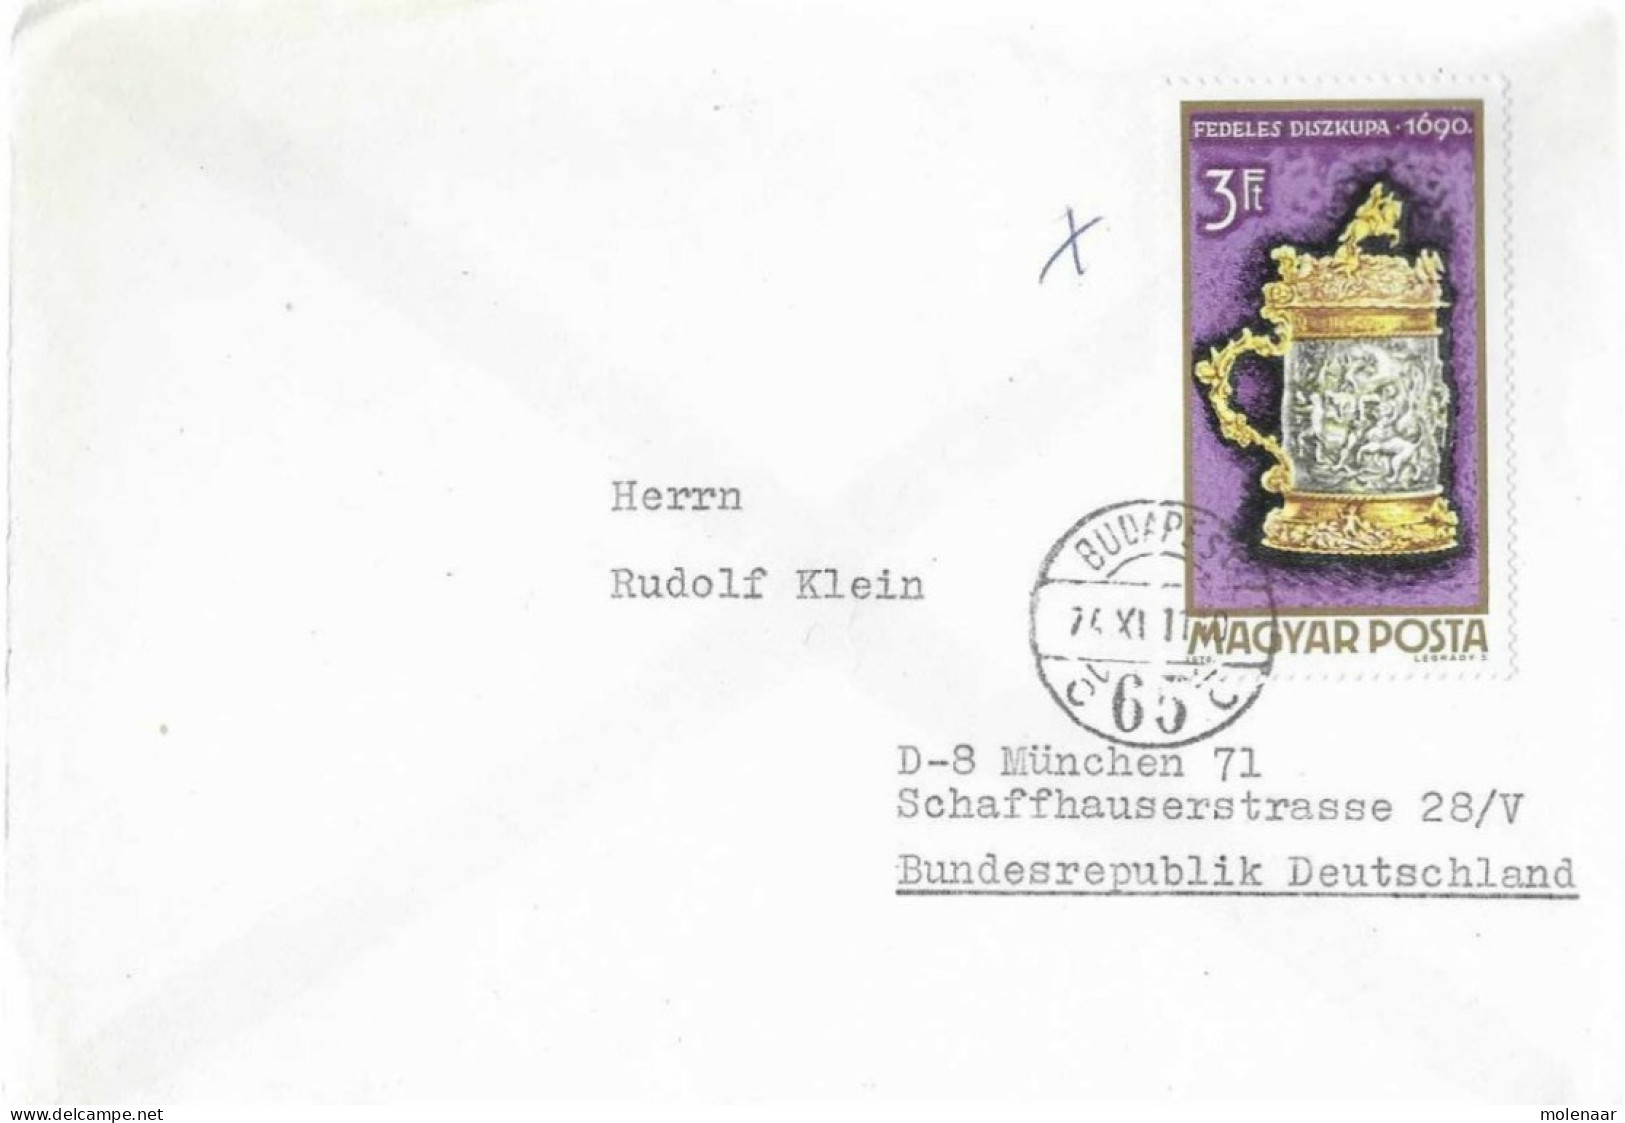 Postzegels > Europa > Hongarije > 1971-80 >brief Met 1 Postzegel (17062) - Lettres & Documents